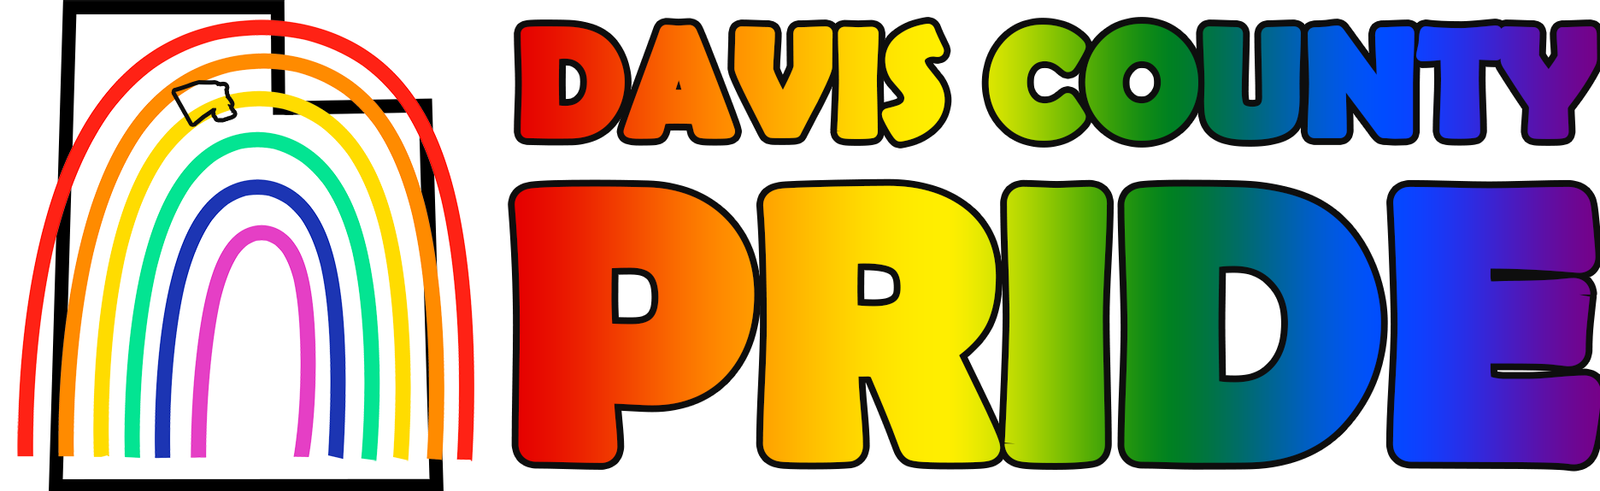 Davis County Pride